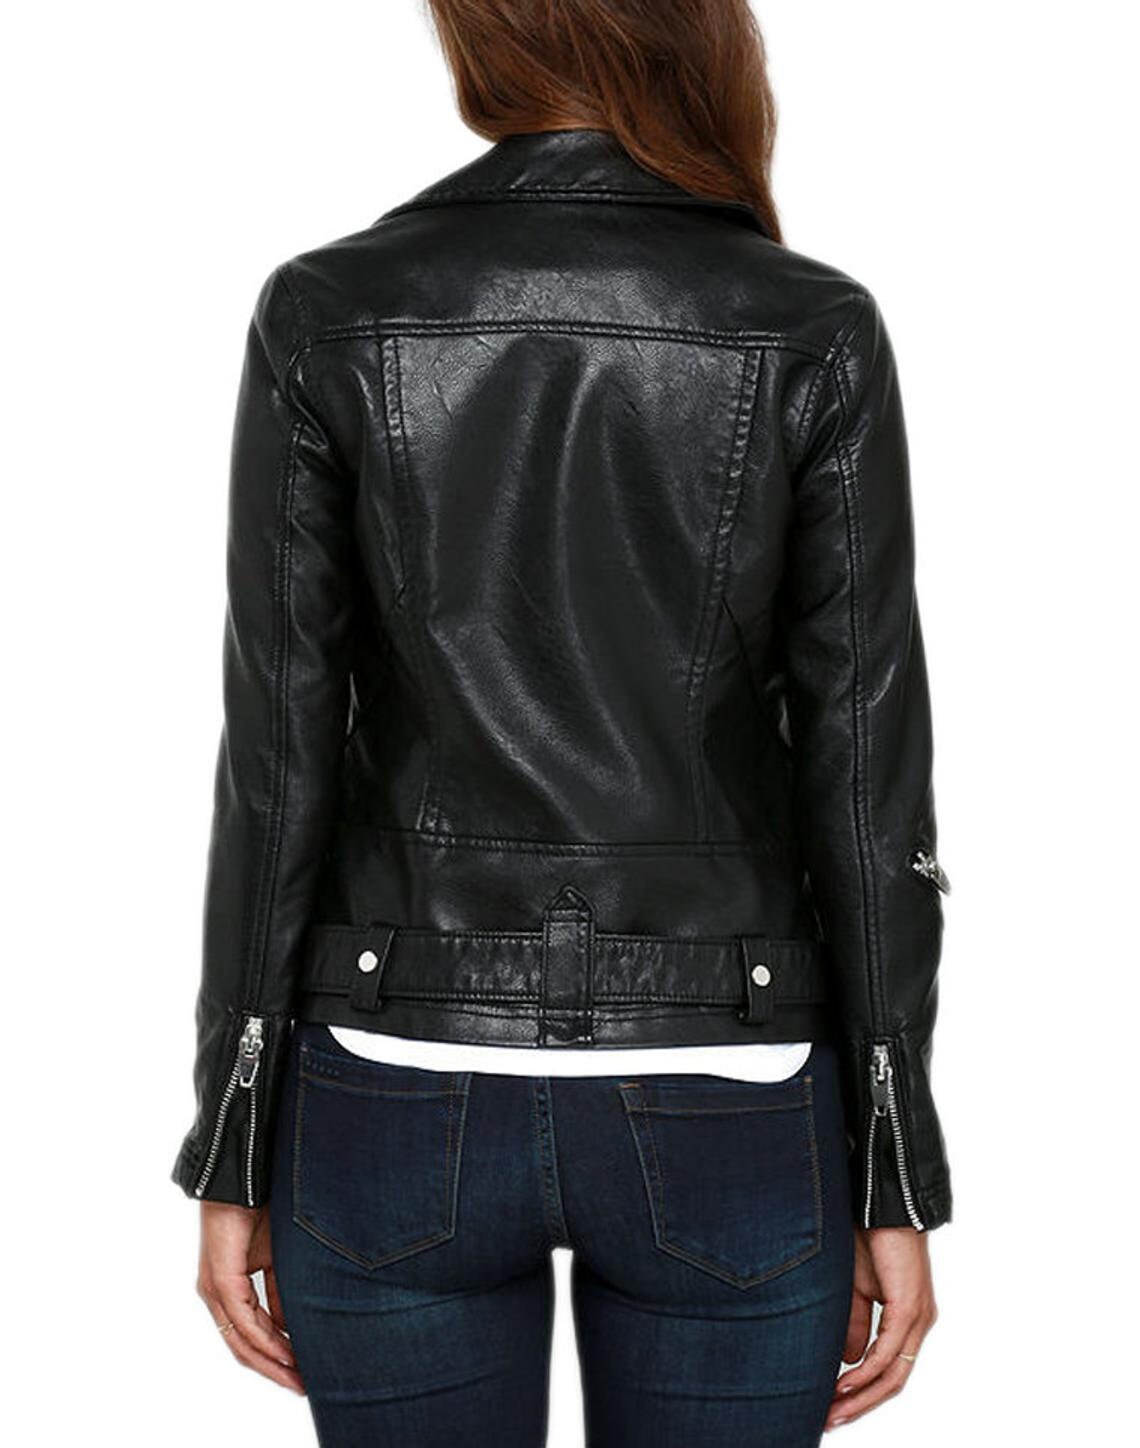 Women Lambskin Soft Real Leather Jacket Motorcycle Black Slim - Etsy UK